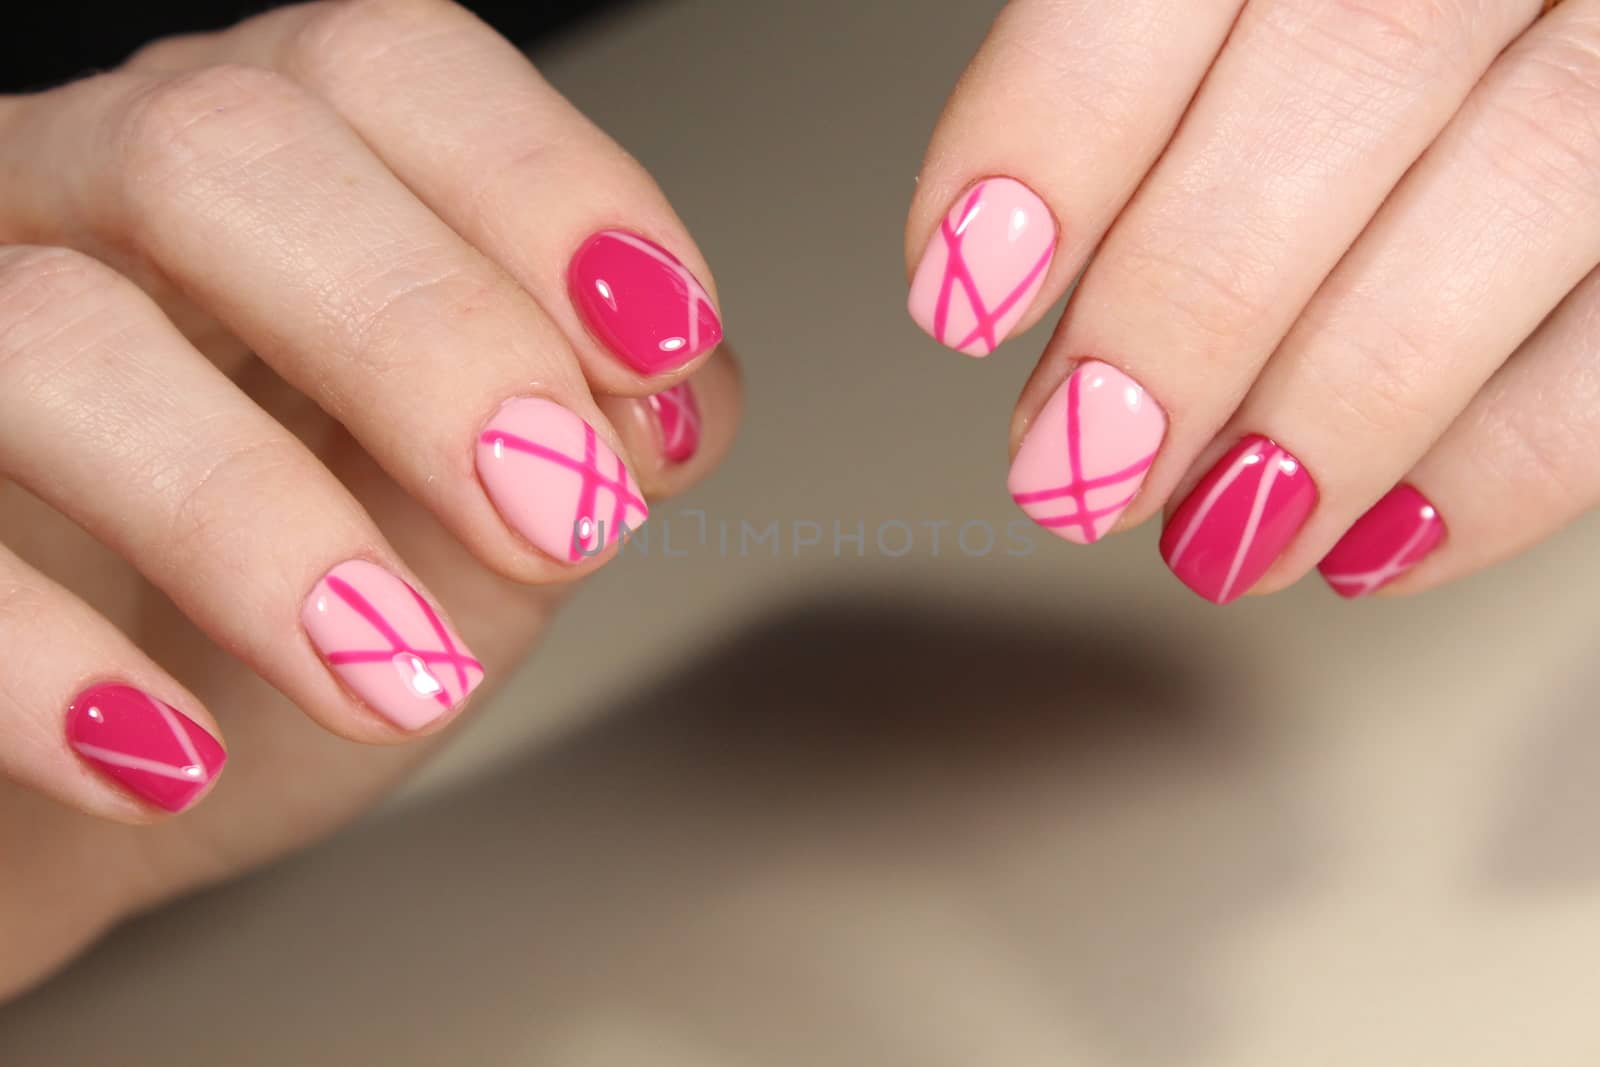 Manicured nails with pink nail polish. Manicure with nailpolish. Fashion art